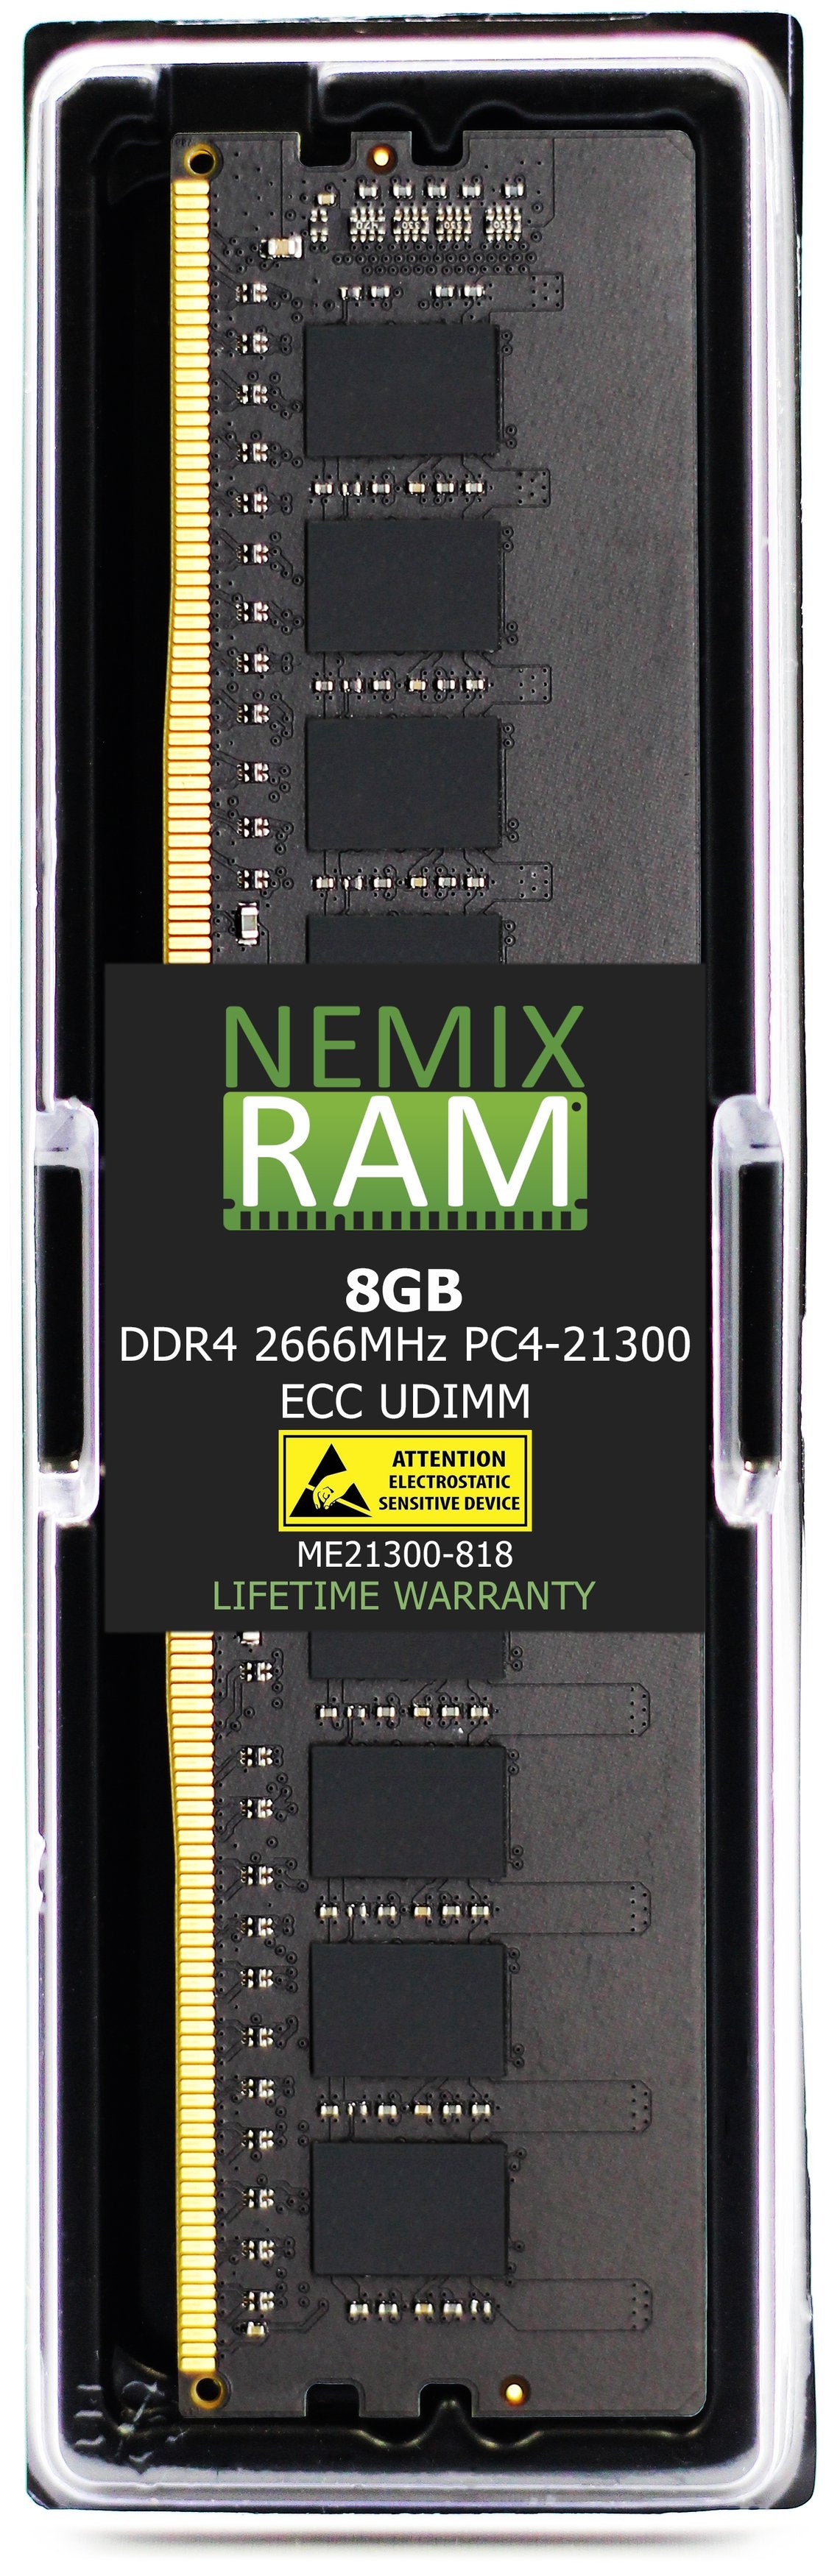 8GB DDR4 2666MHZ PC4-21300 ECC UDIMM Compatible with Supermicro MEM-DR480L-HL01-EU26